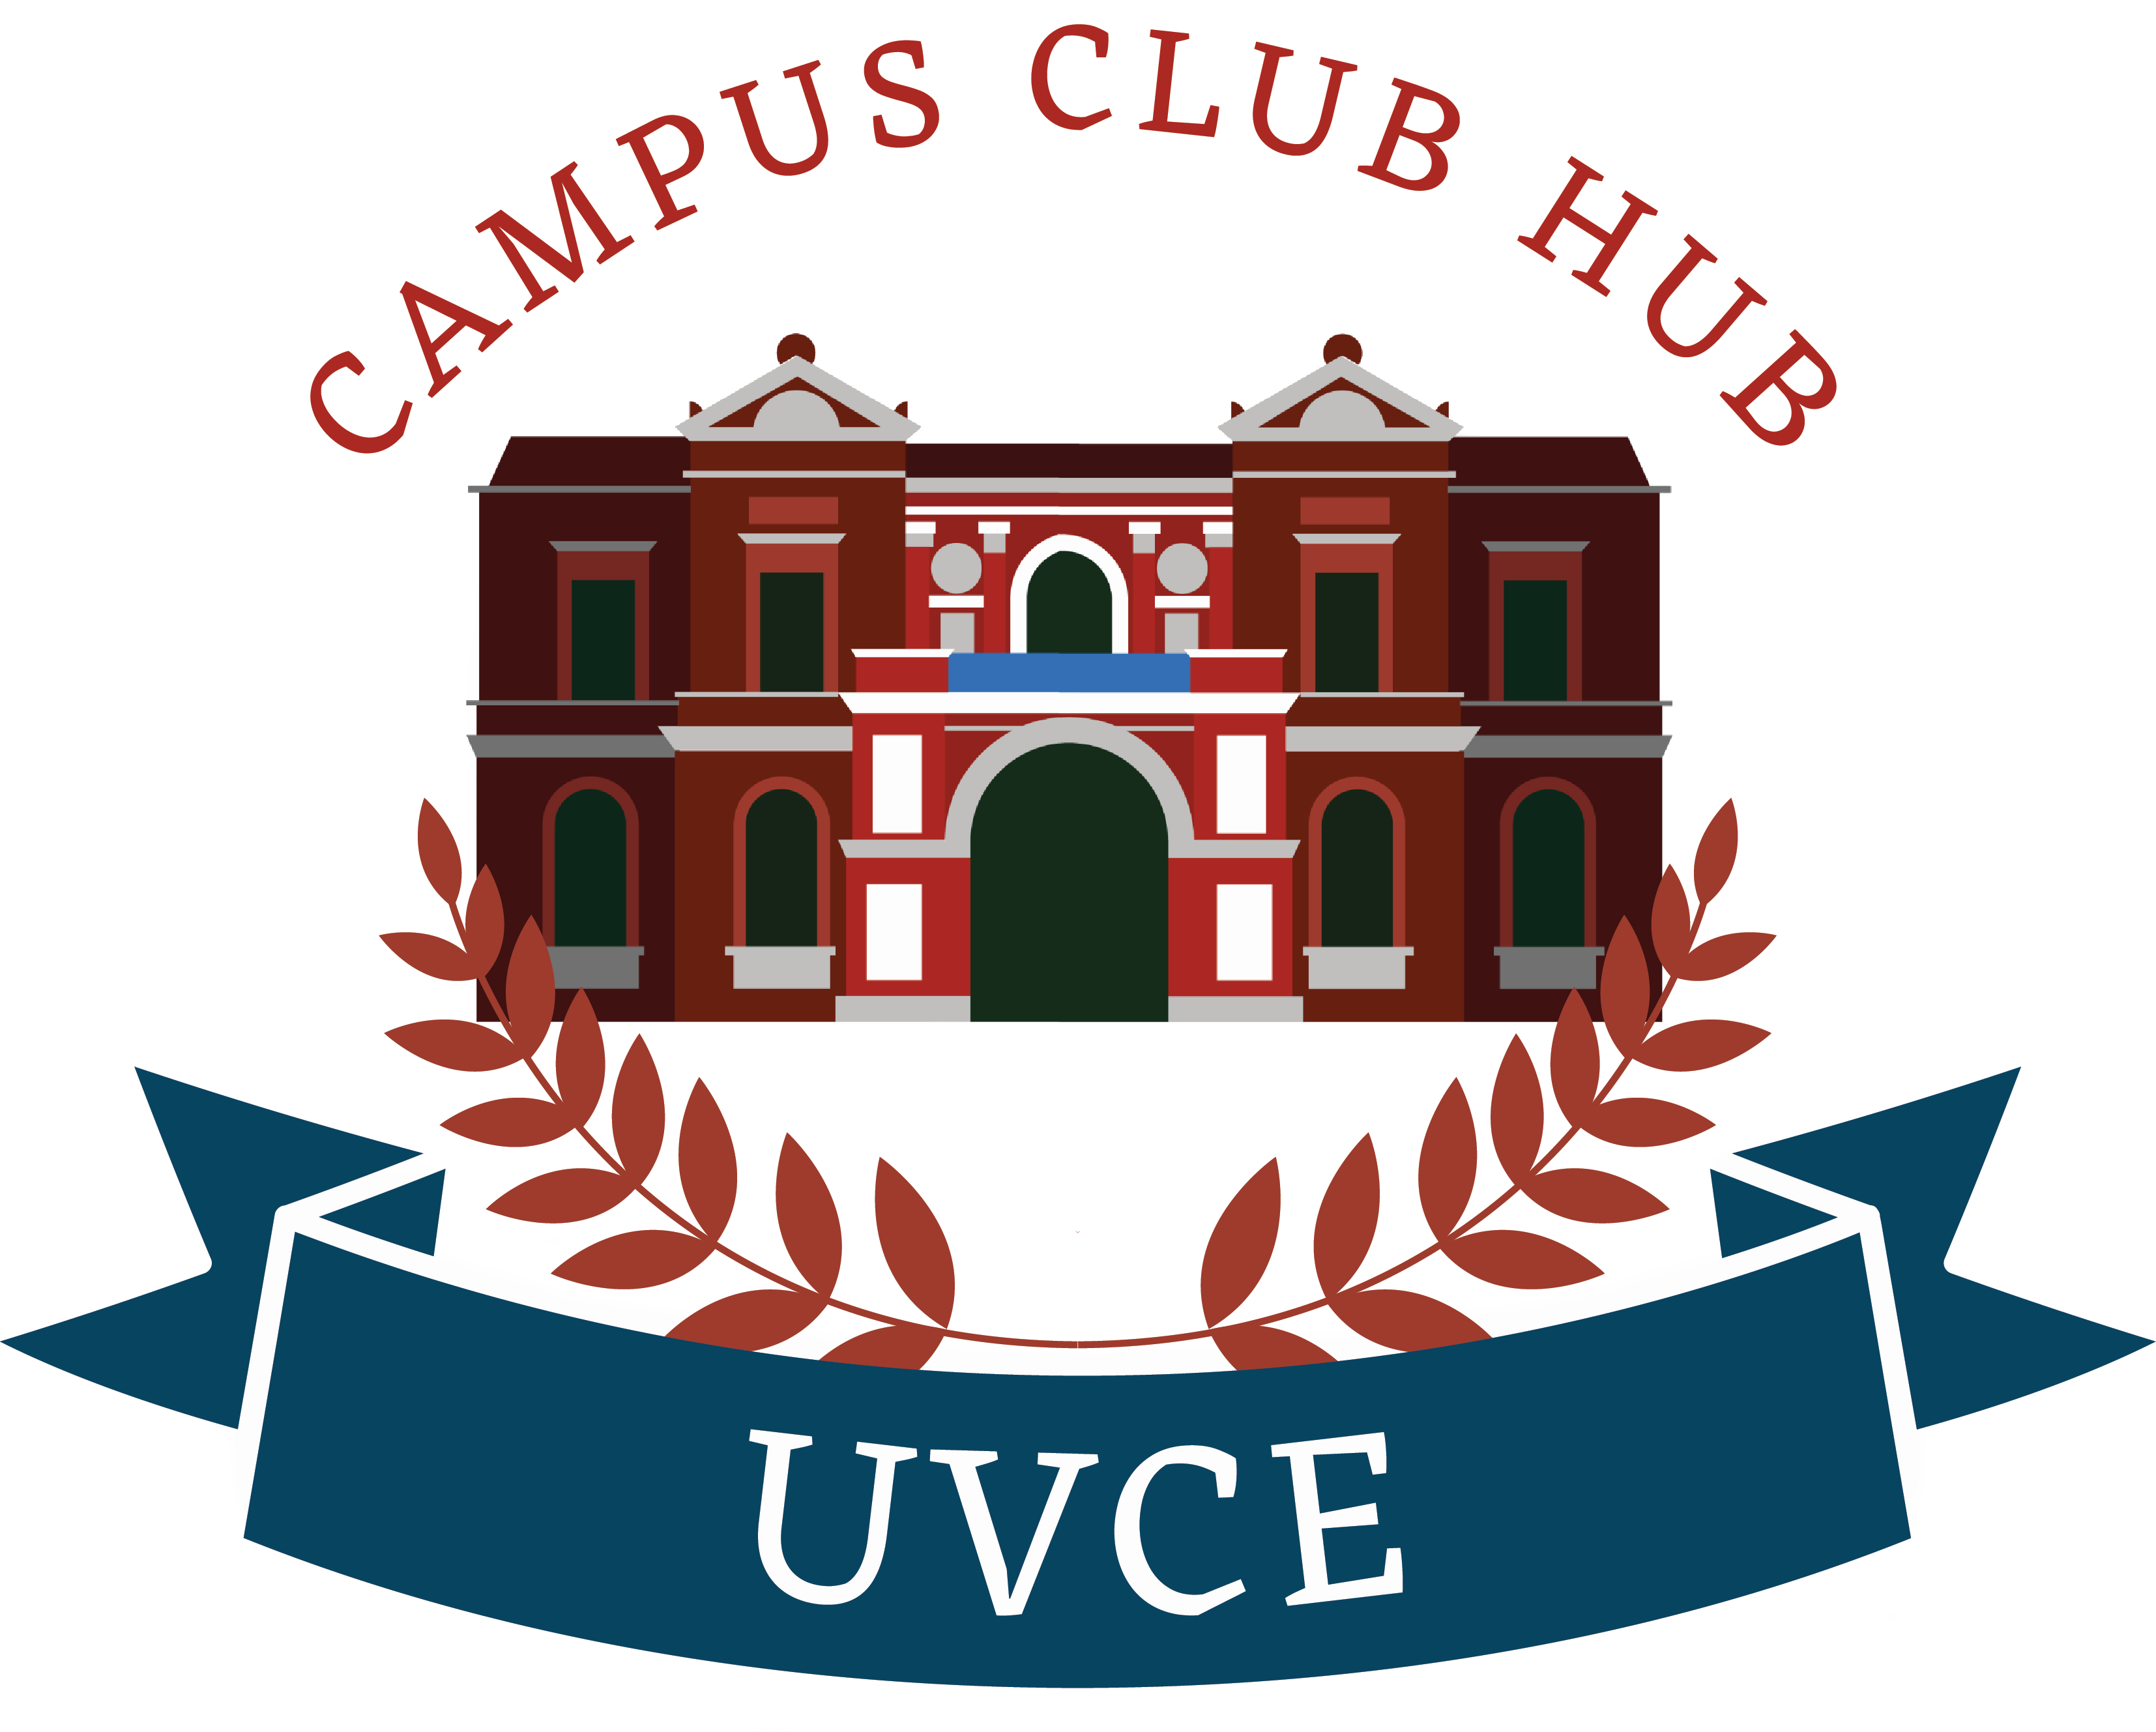 Campus Club Hub logo